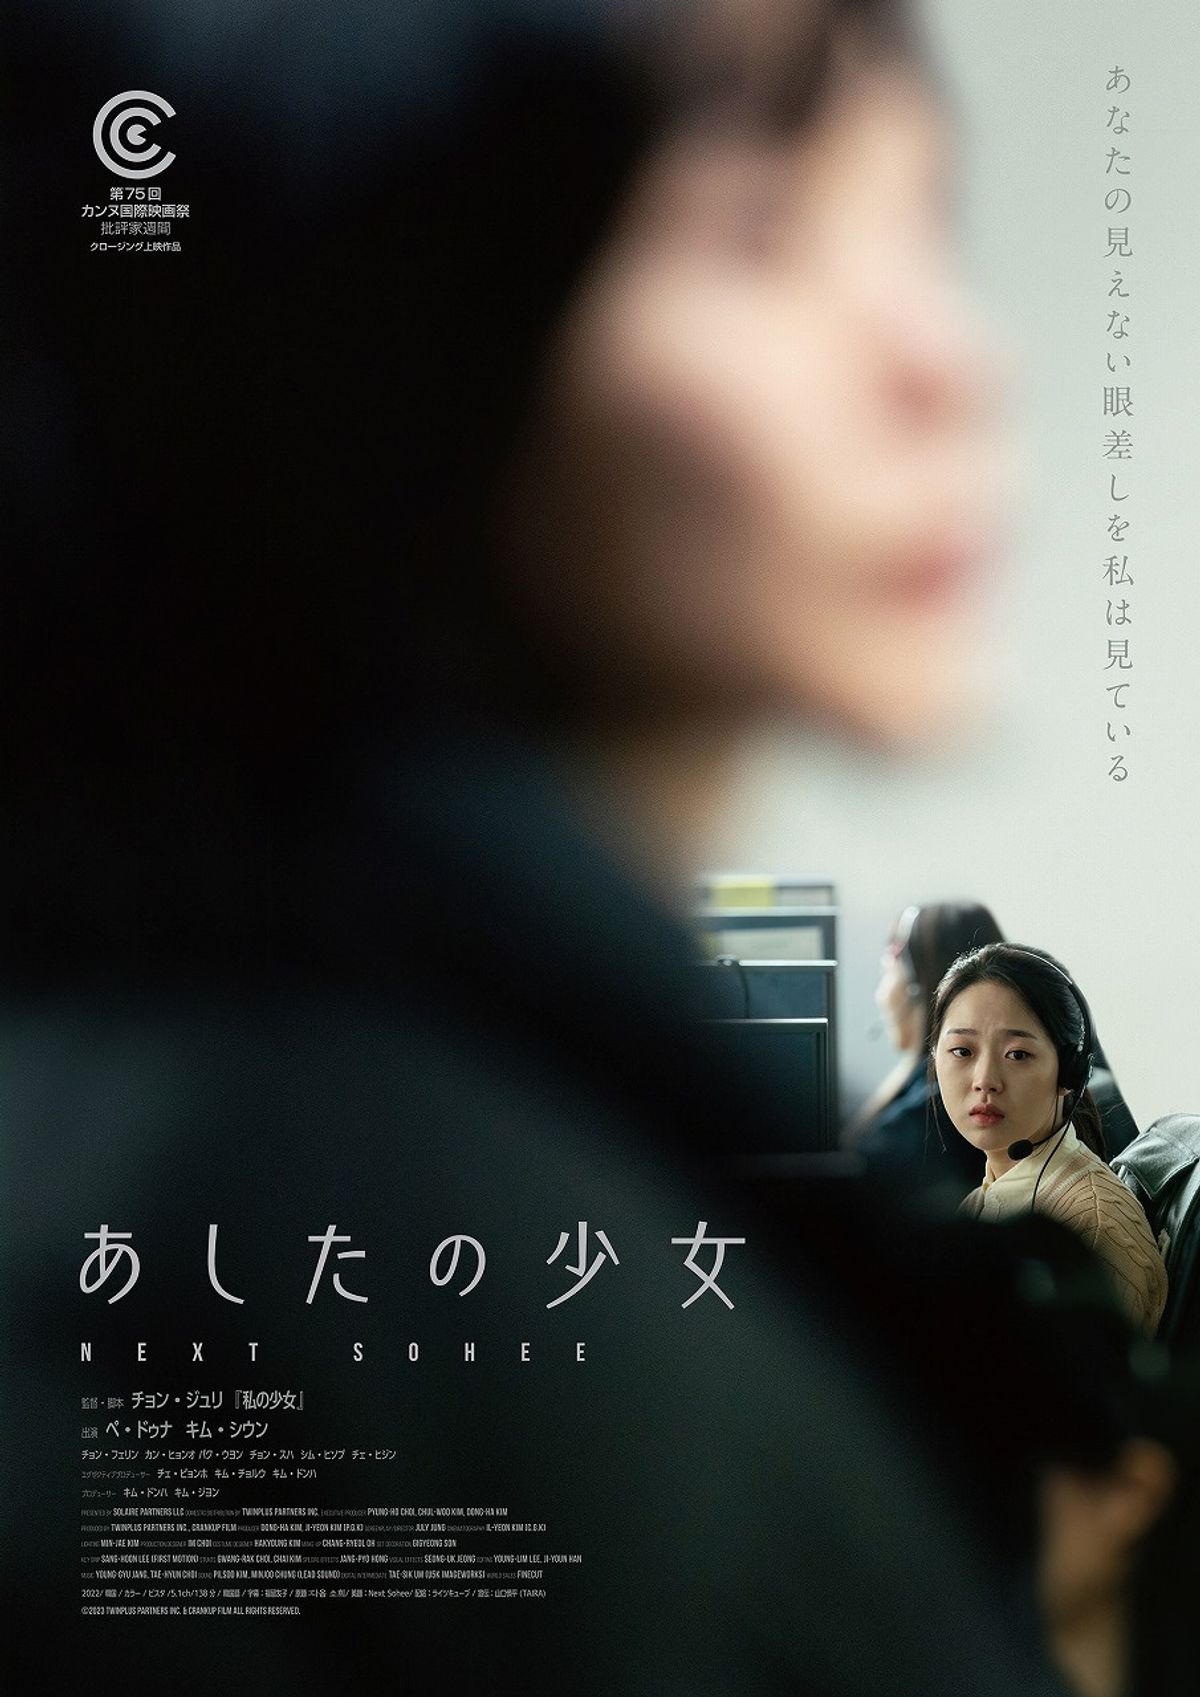 ペ・ドゥナ主演、実在の事件を描く映画『あしたの少女』日本公開